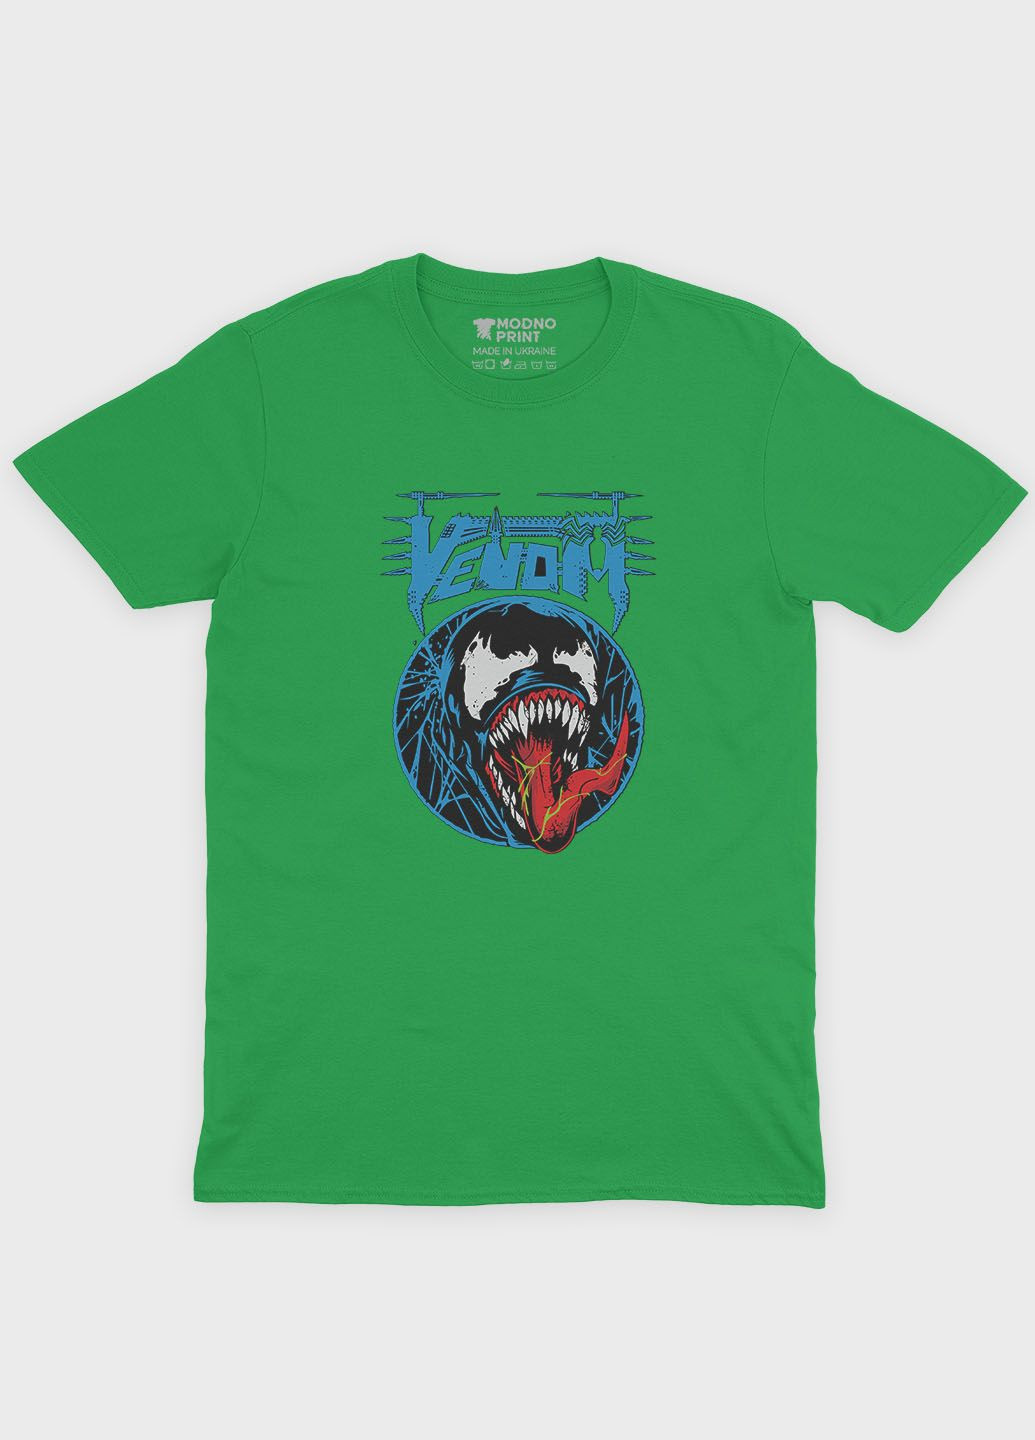 Зеленая демисезонная футболка для мальчика с принтом супервора - веном (ts001-1-keg-006-013-026-b) Modno